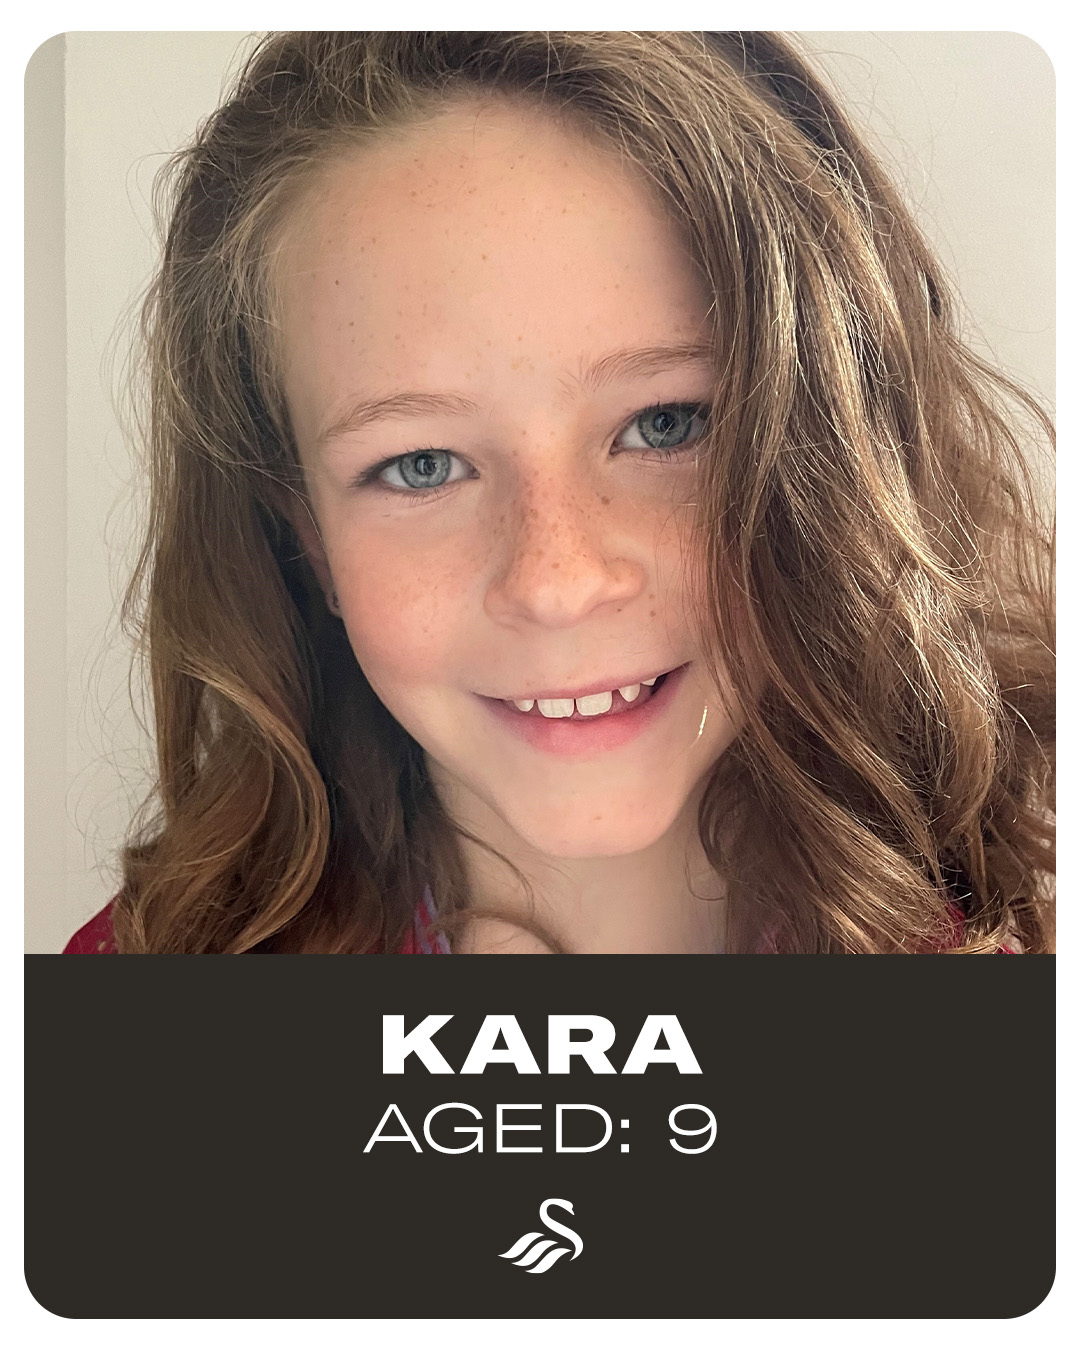 Photograph of Kara